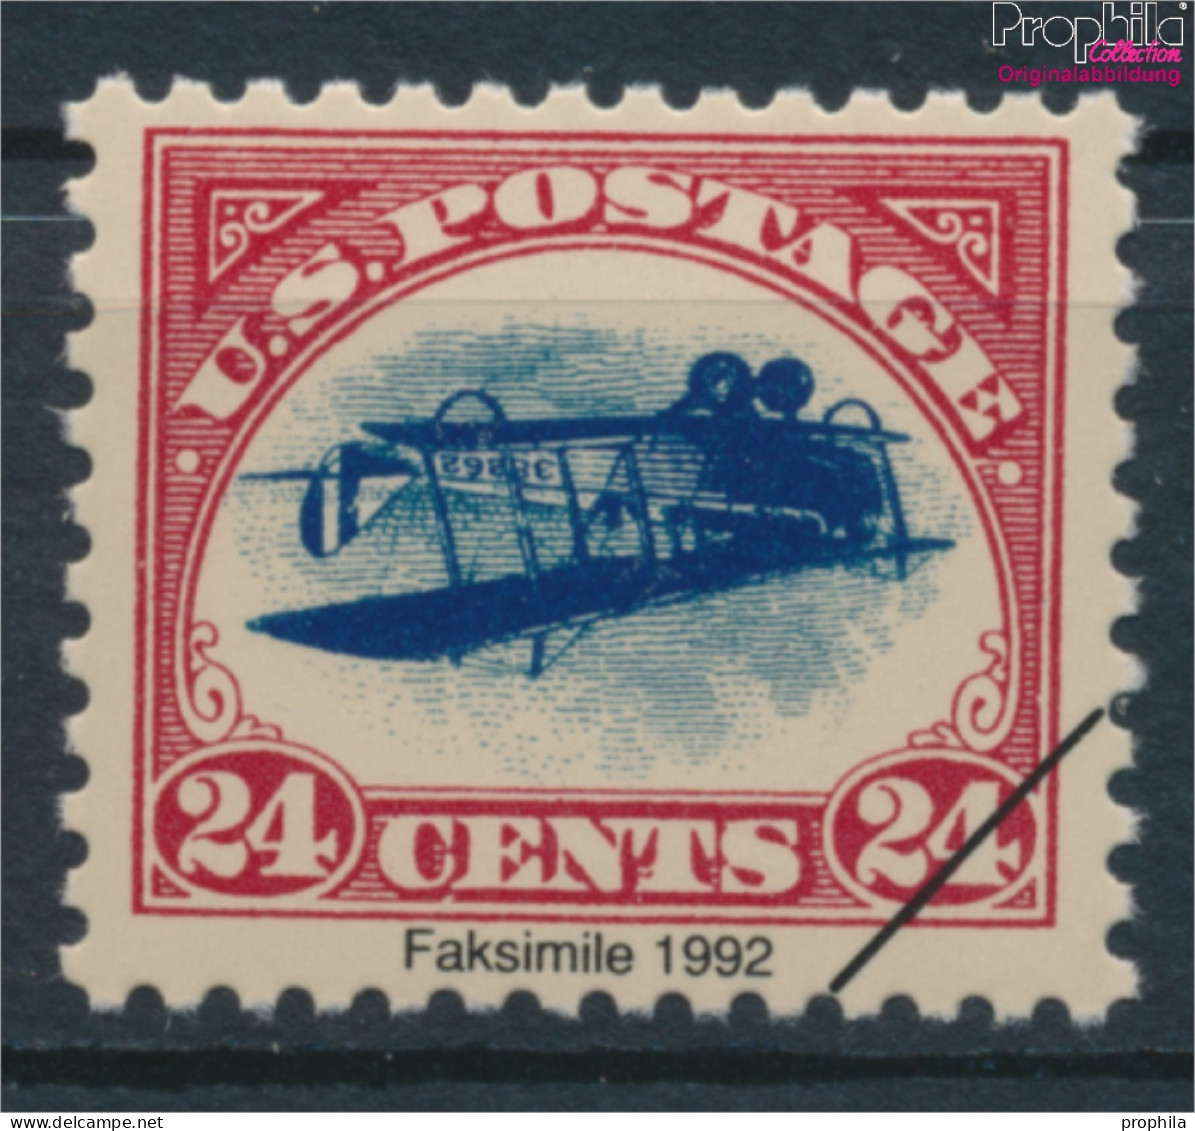 USA 250I ND, Privater Nachdruck Inverted Jenny Postfrisch 1918 Postfluglinie-NewYork-Philadelphia- (10160954 - Neufs